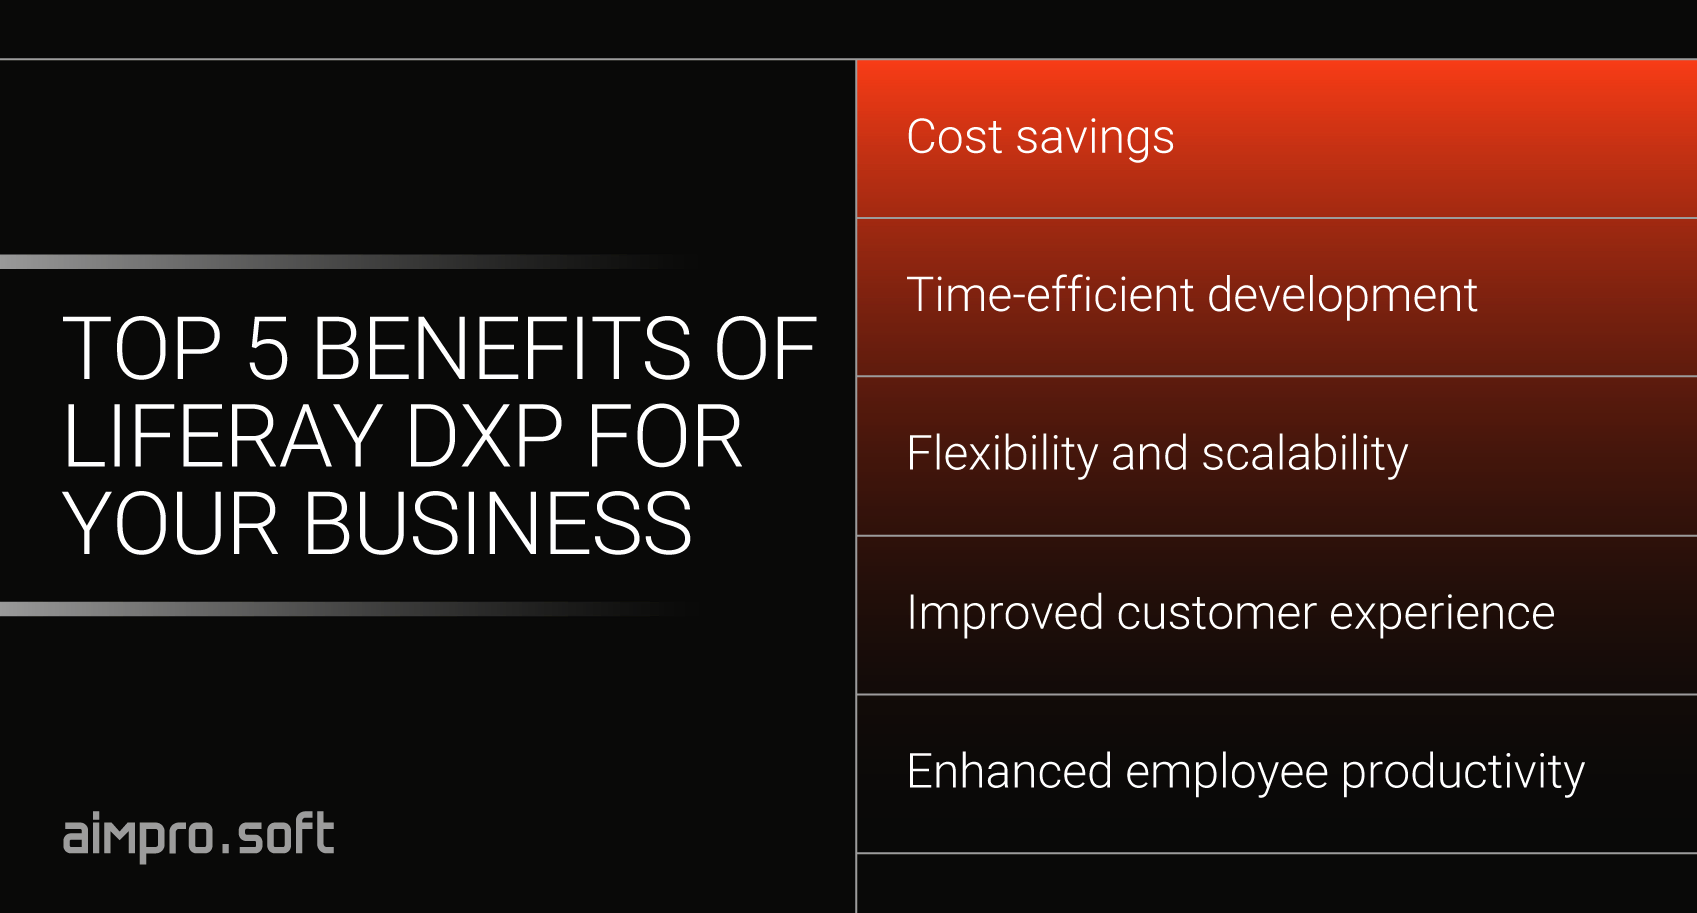 Liferay DXP benefits